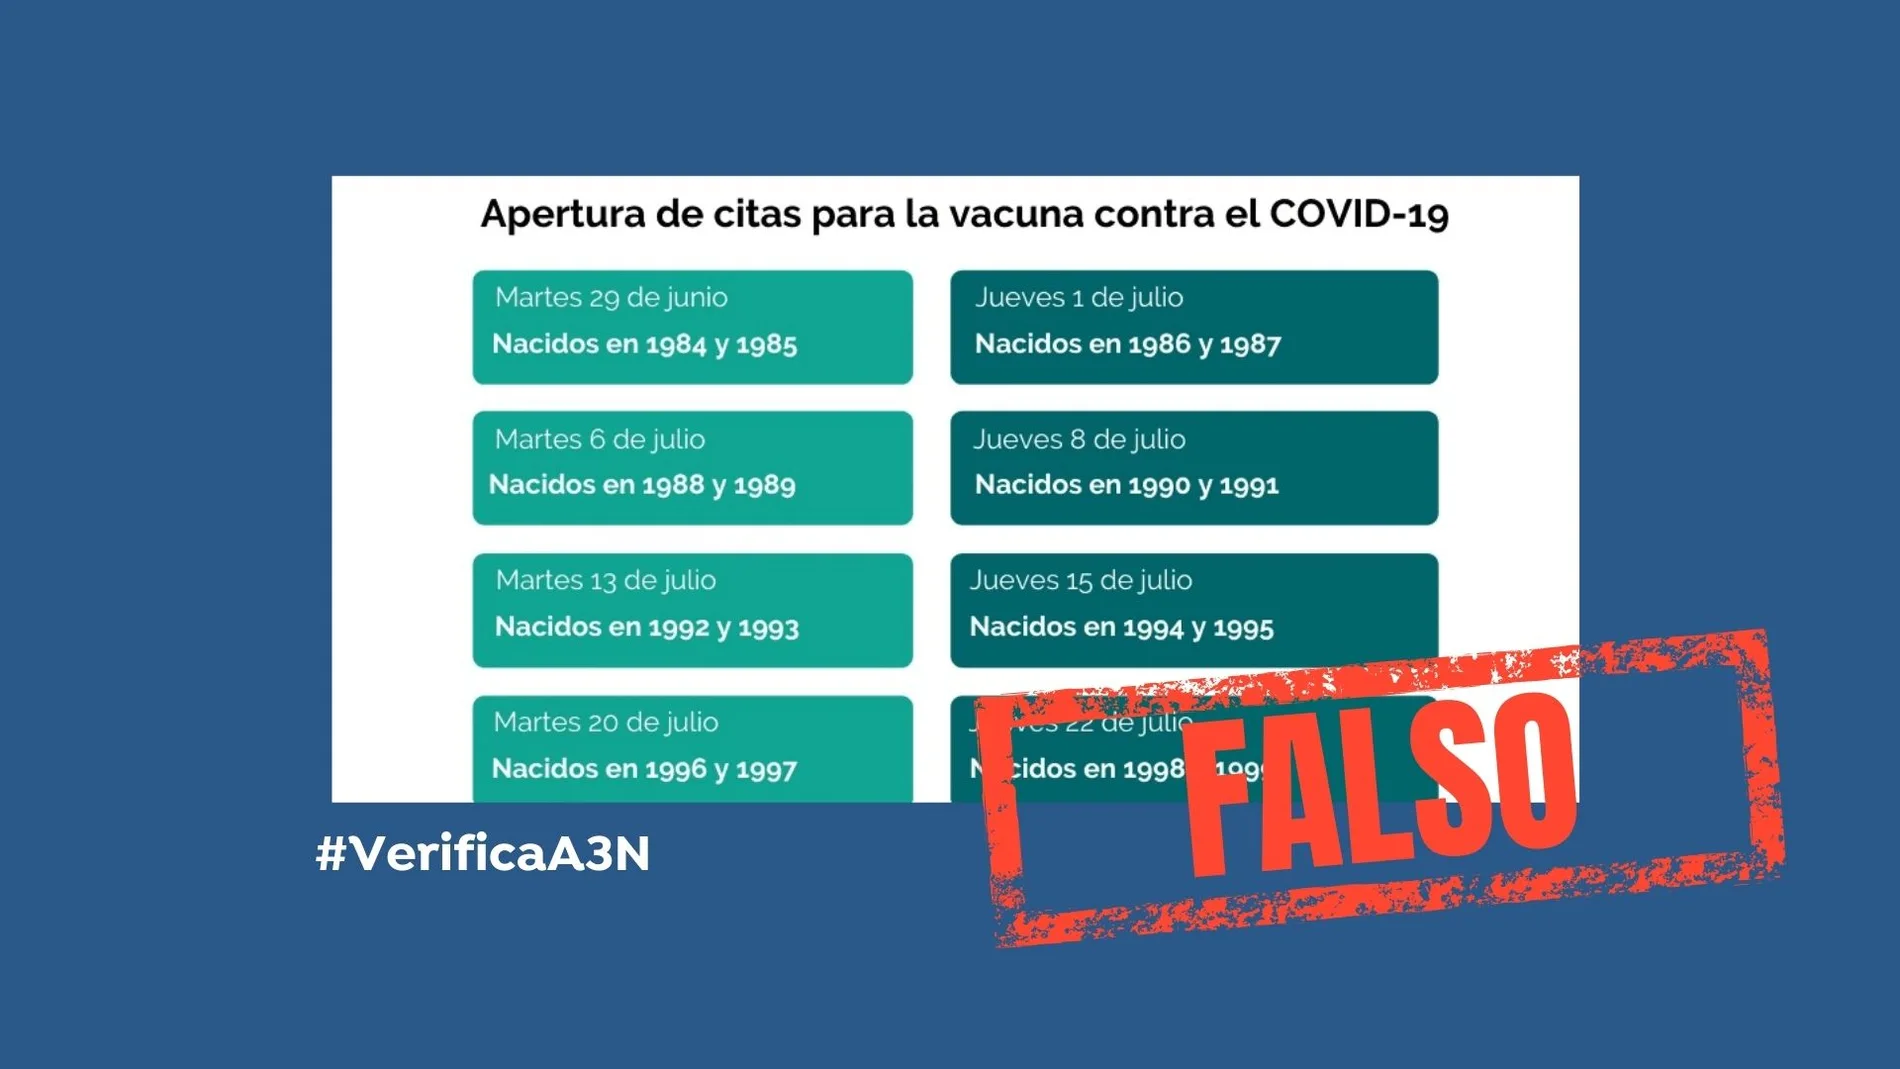 No es cierto que Murcia vacunará a los nacidos en 1994 y 1995 a partir del 15 de julio